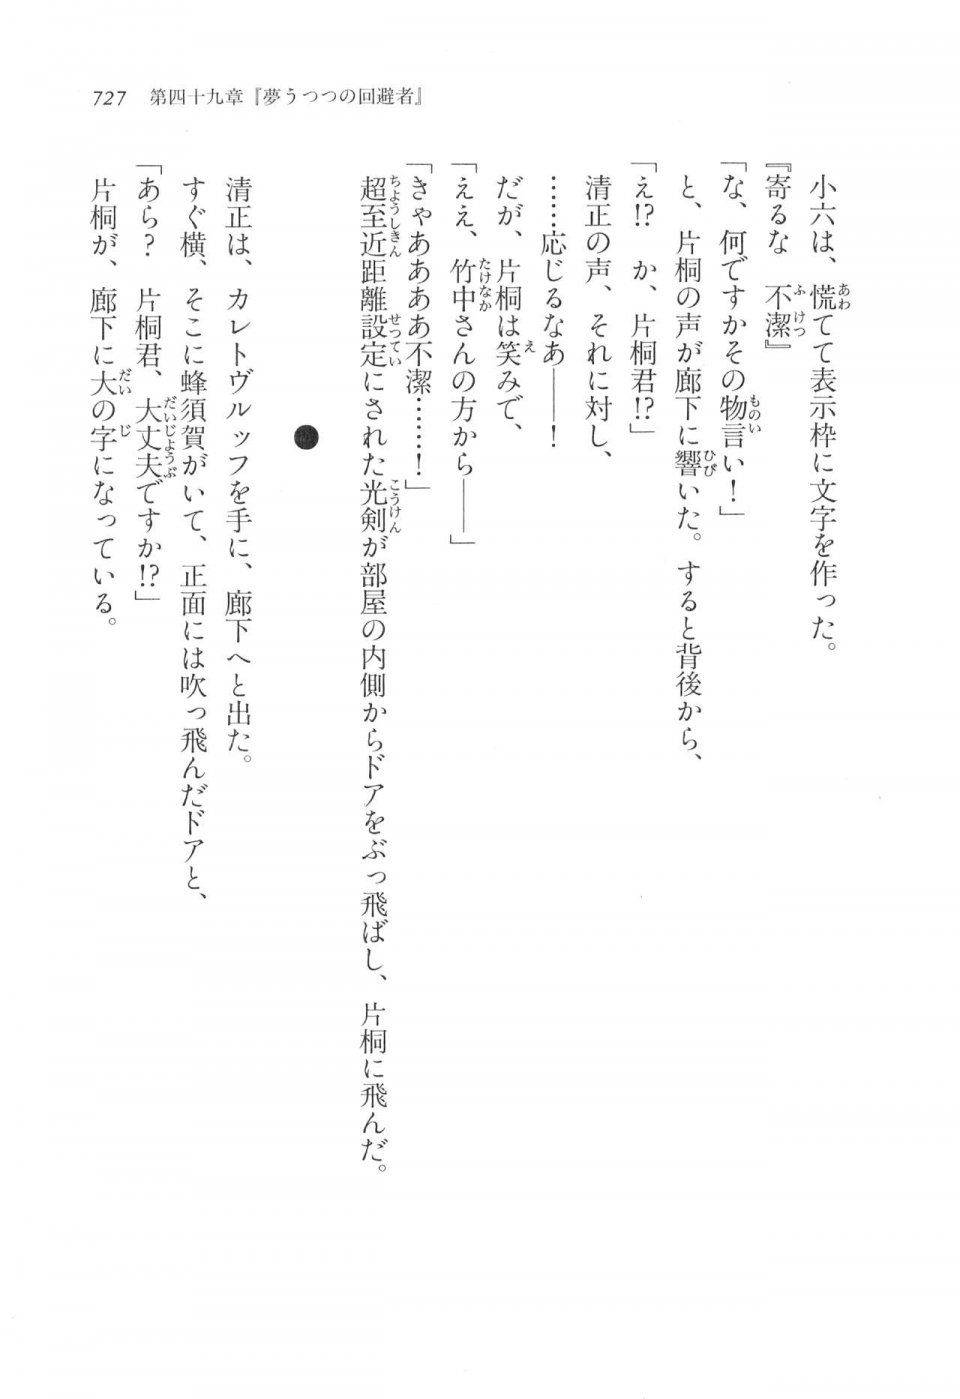 Kyoukai Senjou no Horizon LN Vol 17(7B) - Photo #729